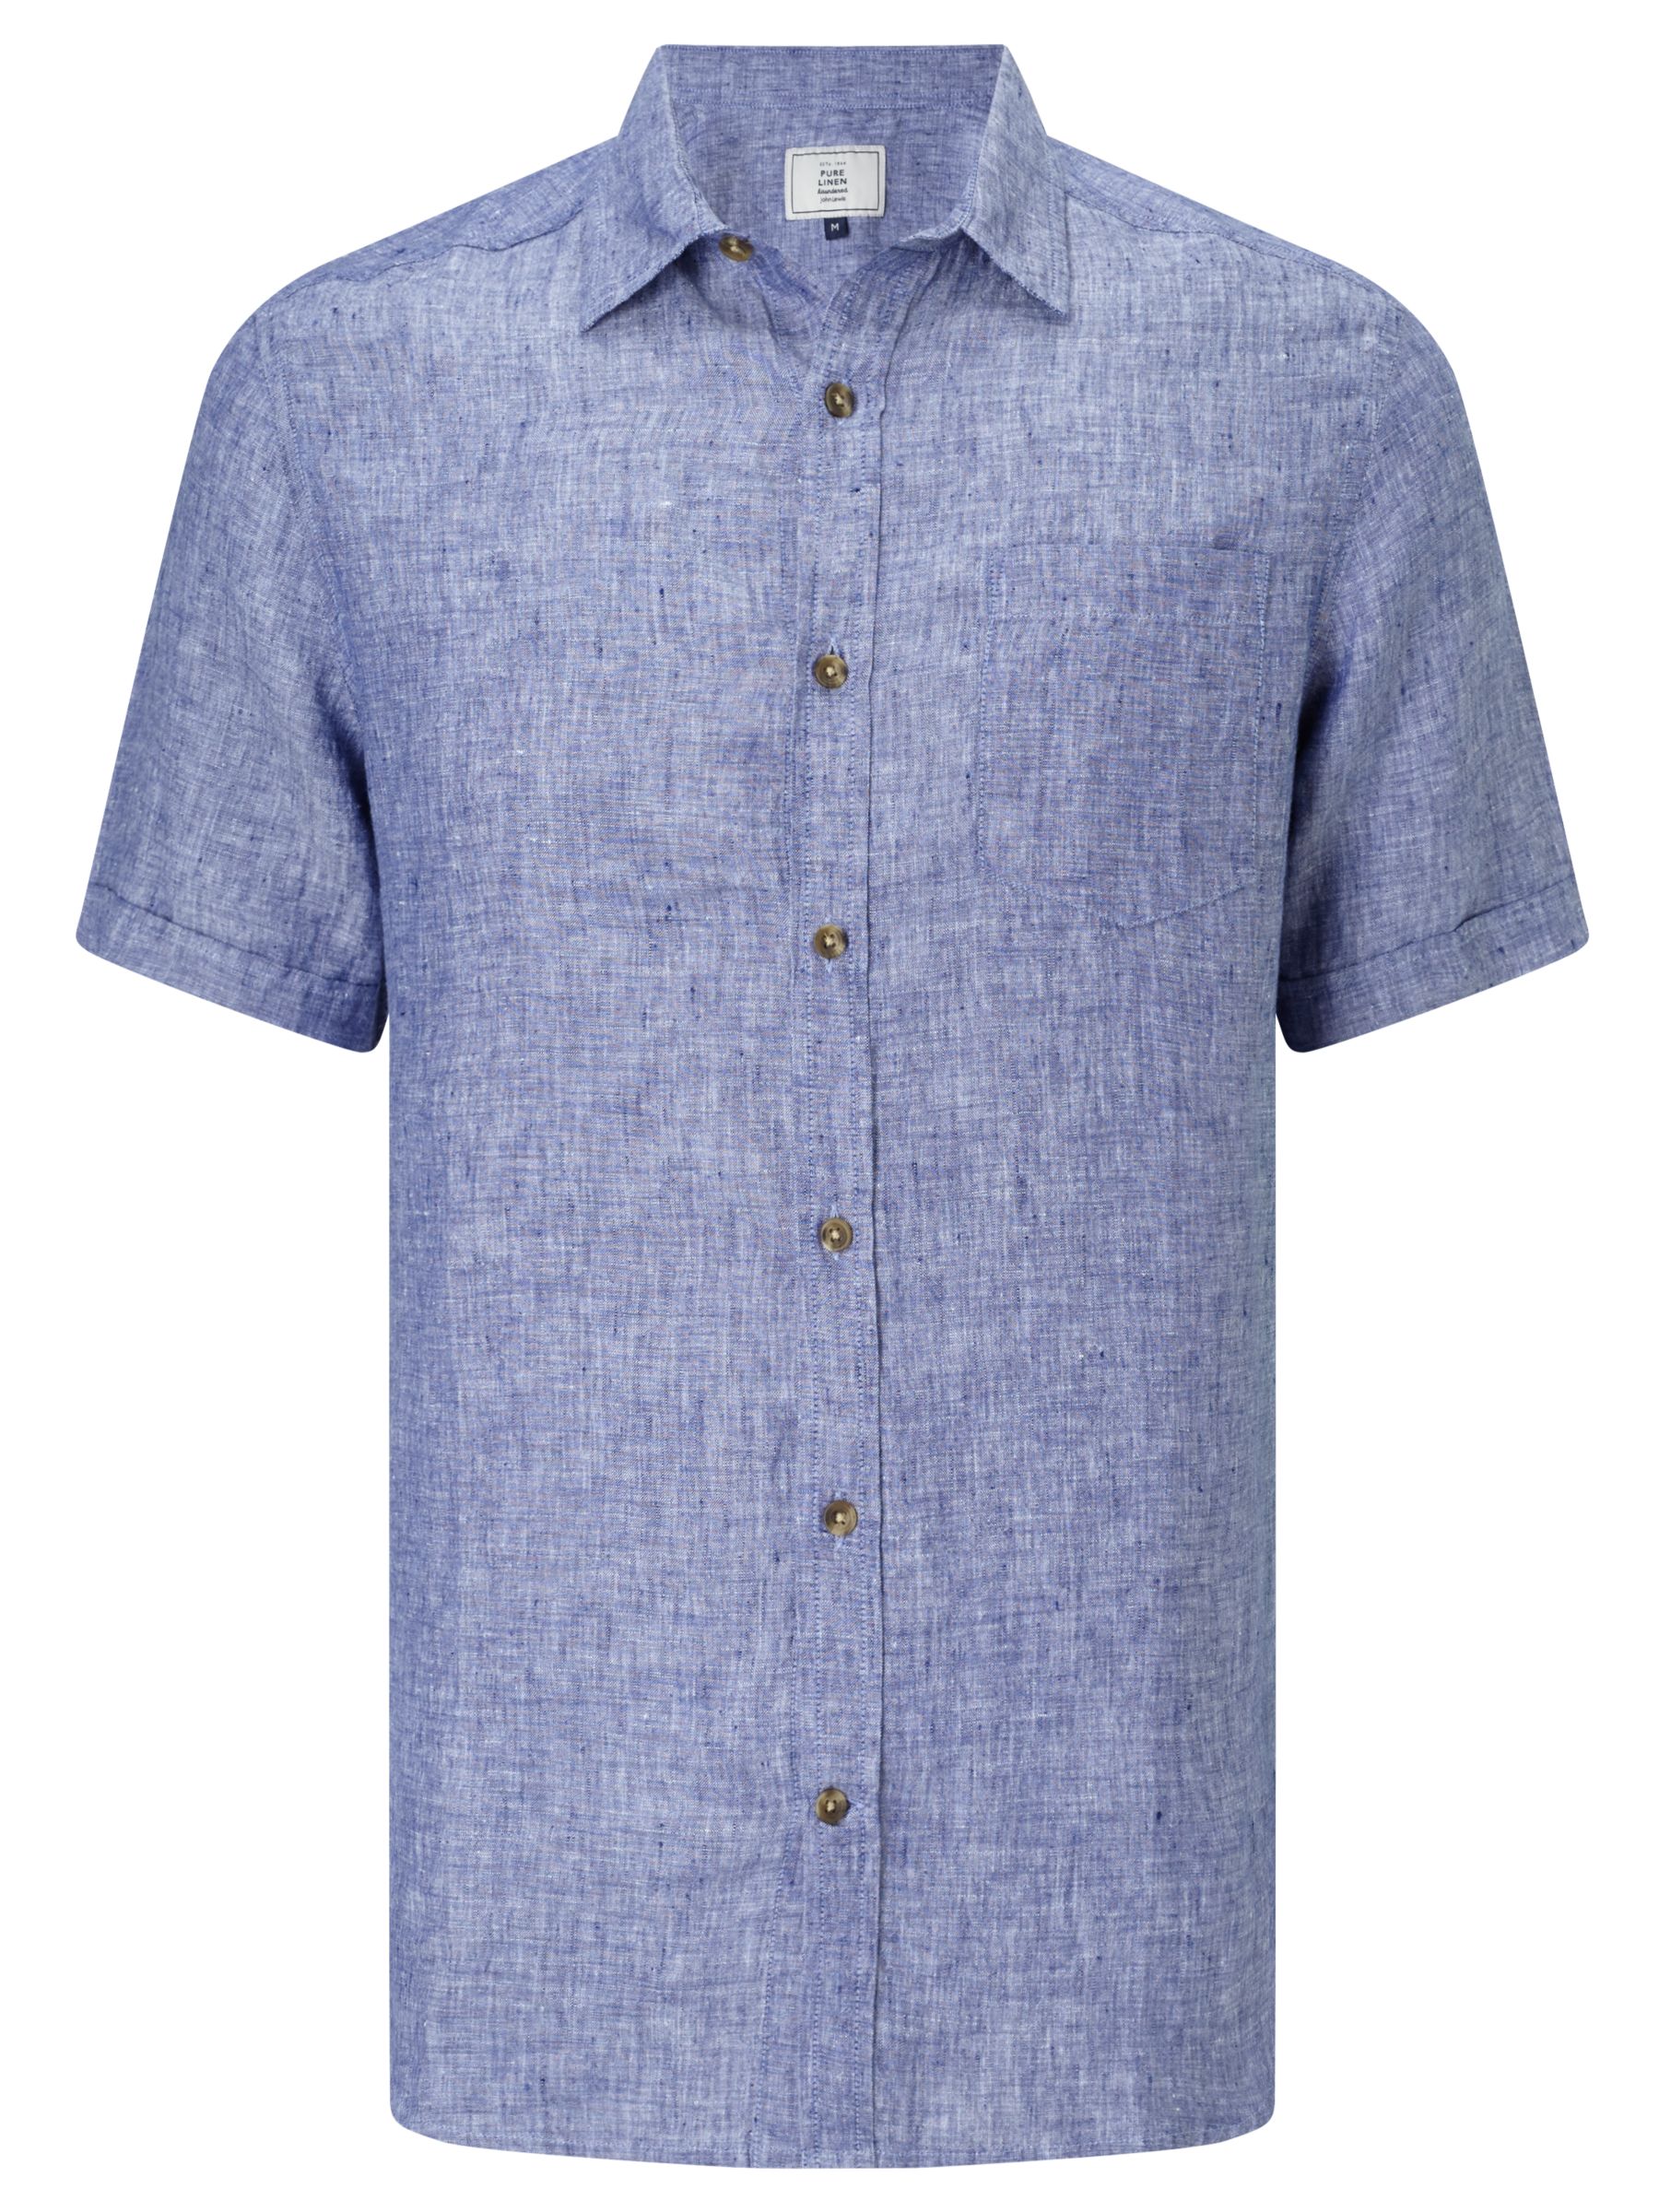 John Lewis & Partners Plain Linen Short Sleeve Shirt